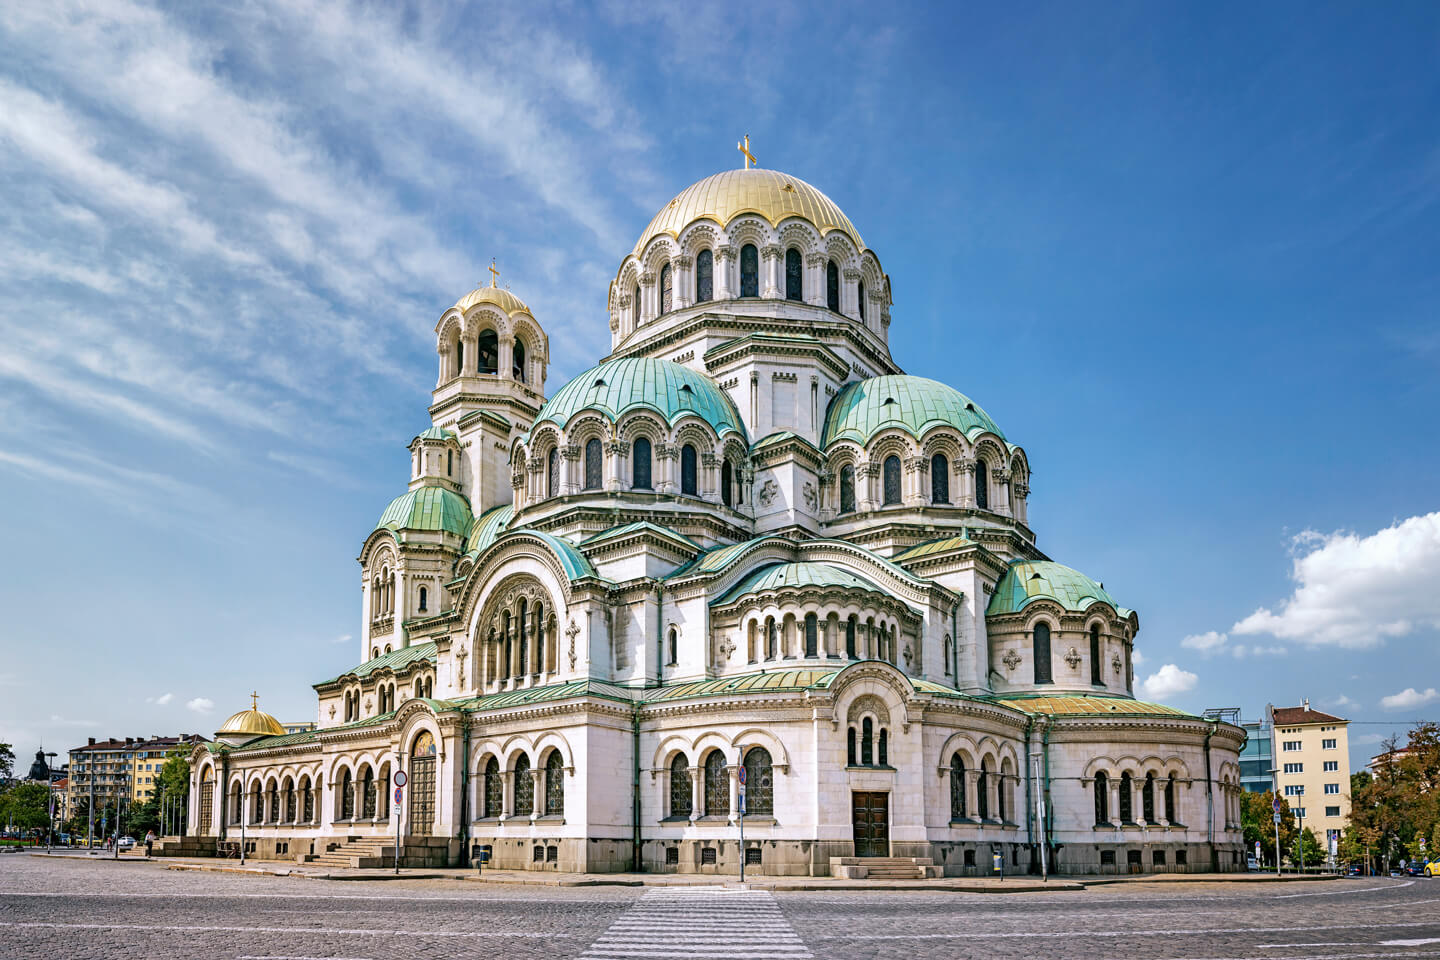 #1 Alexander Nevsky Cathedral